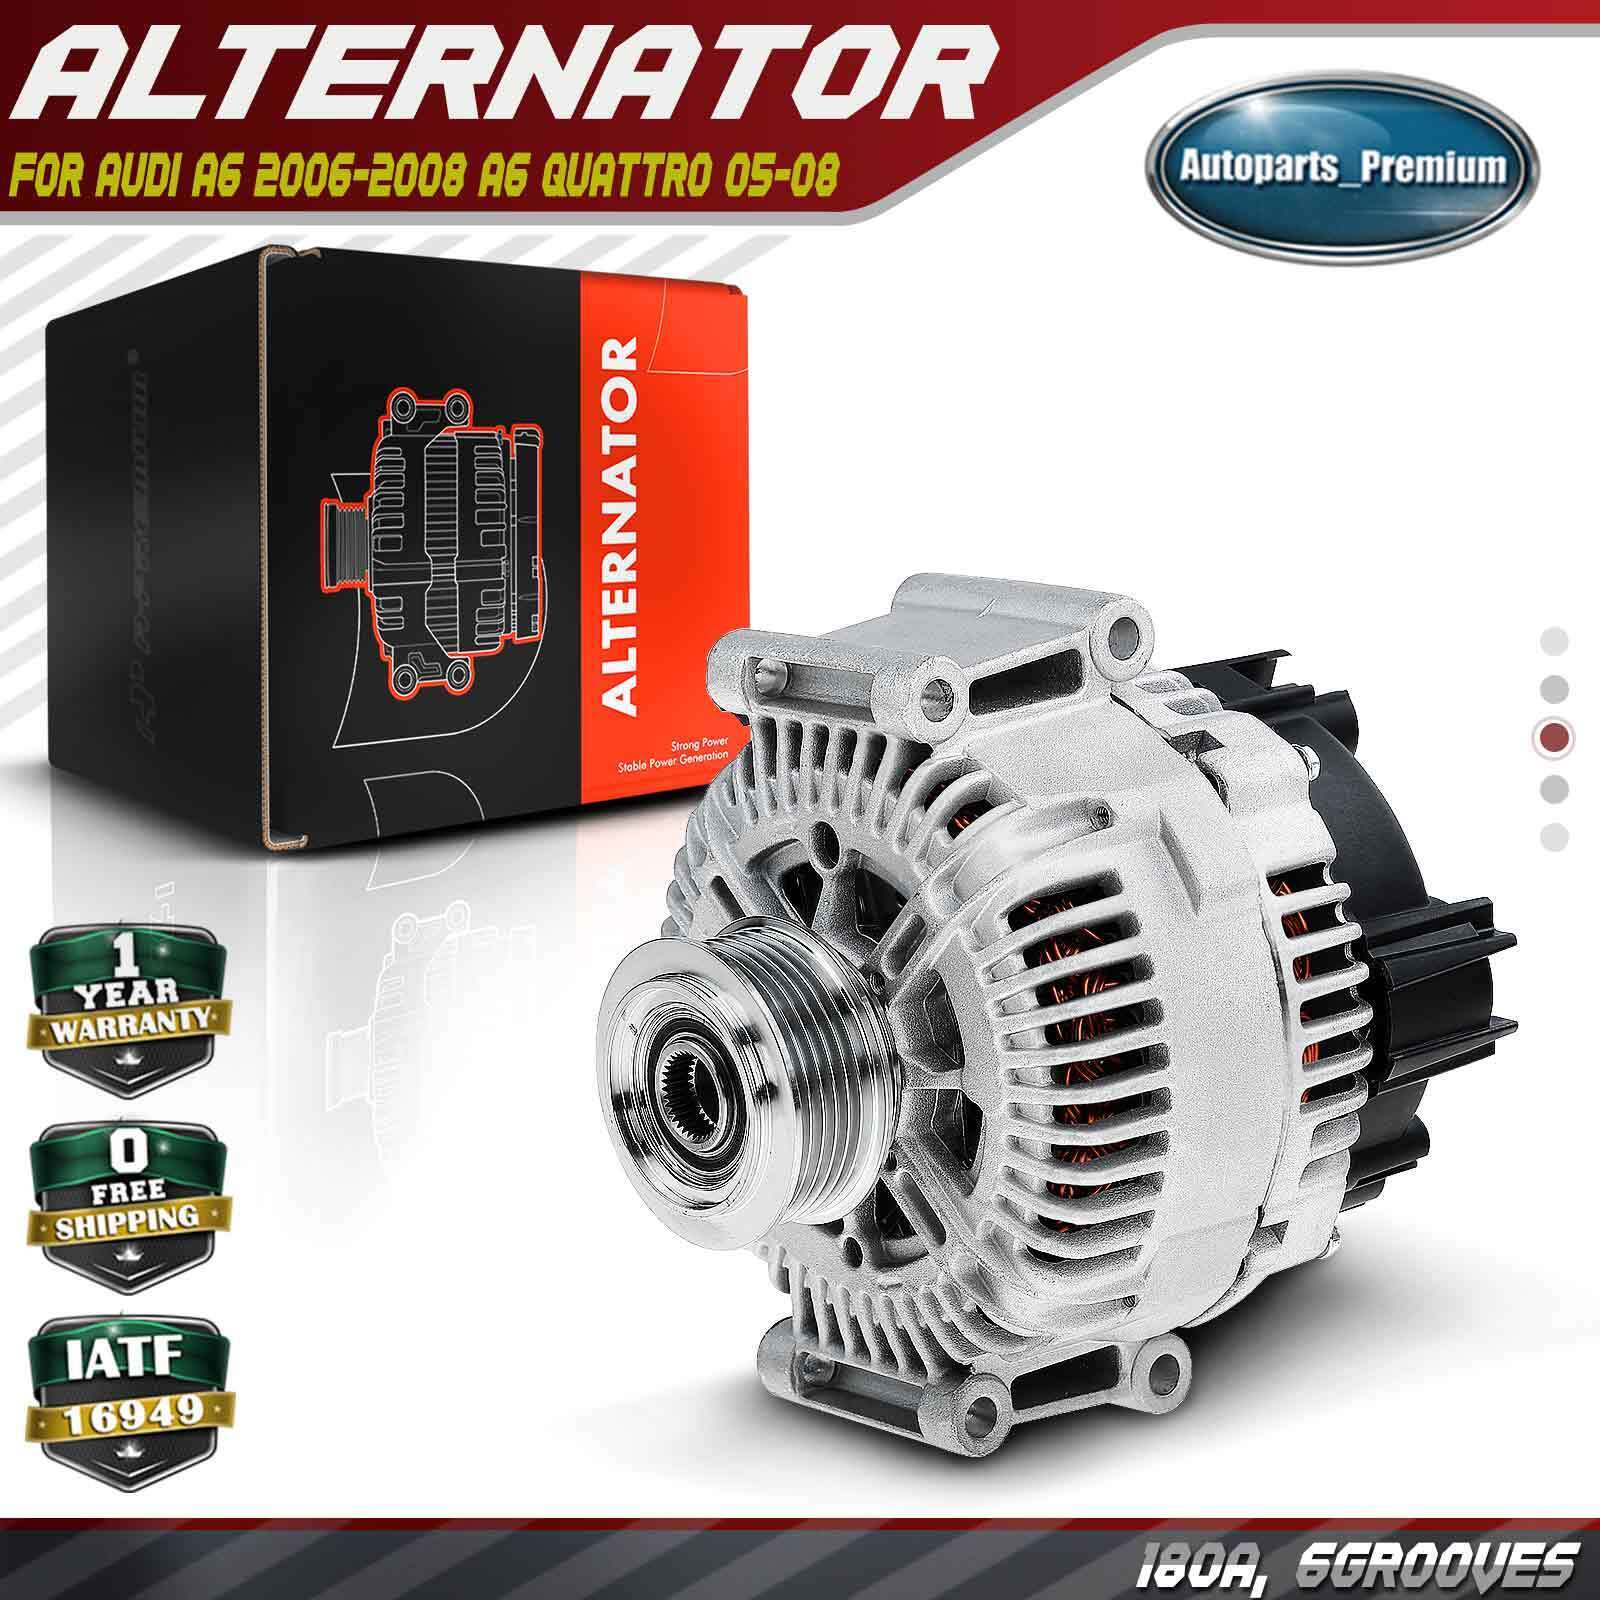 Alternator for Audi A6 2006-2008 A6 Quattro 2005-2008 3.2L 180A 6 Groove Clutch